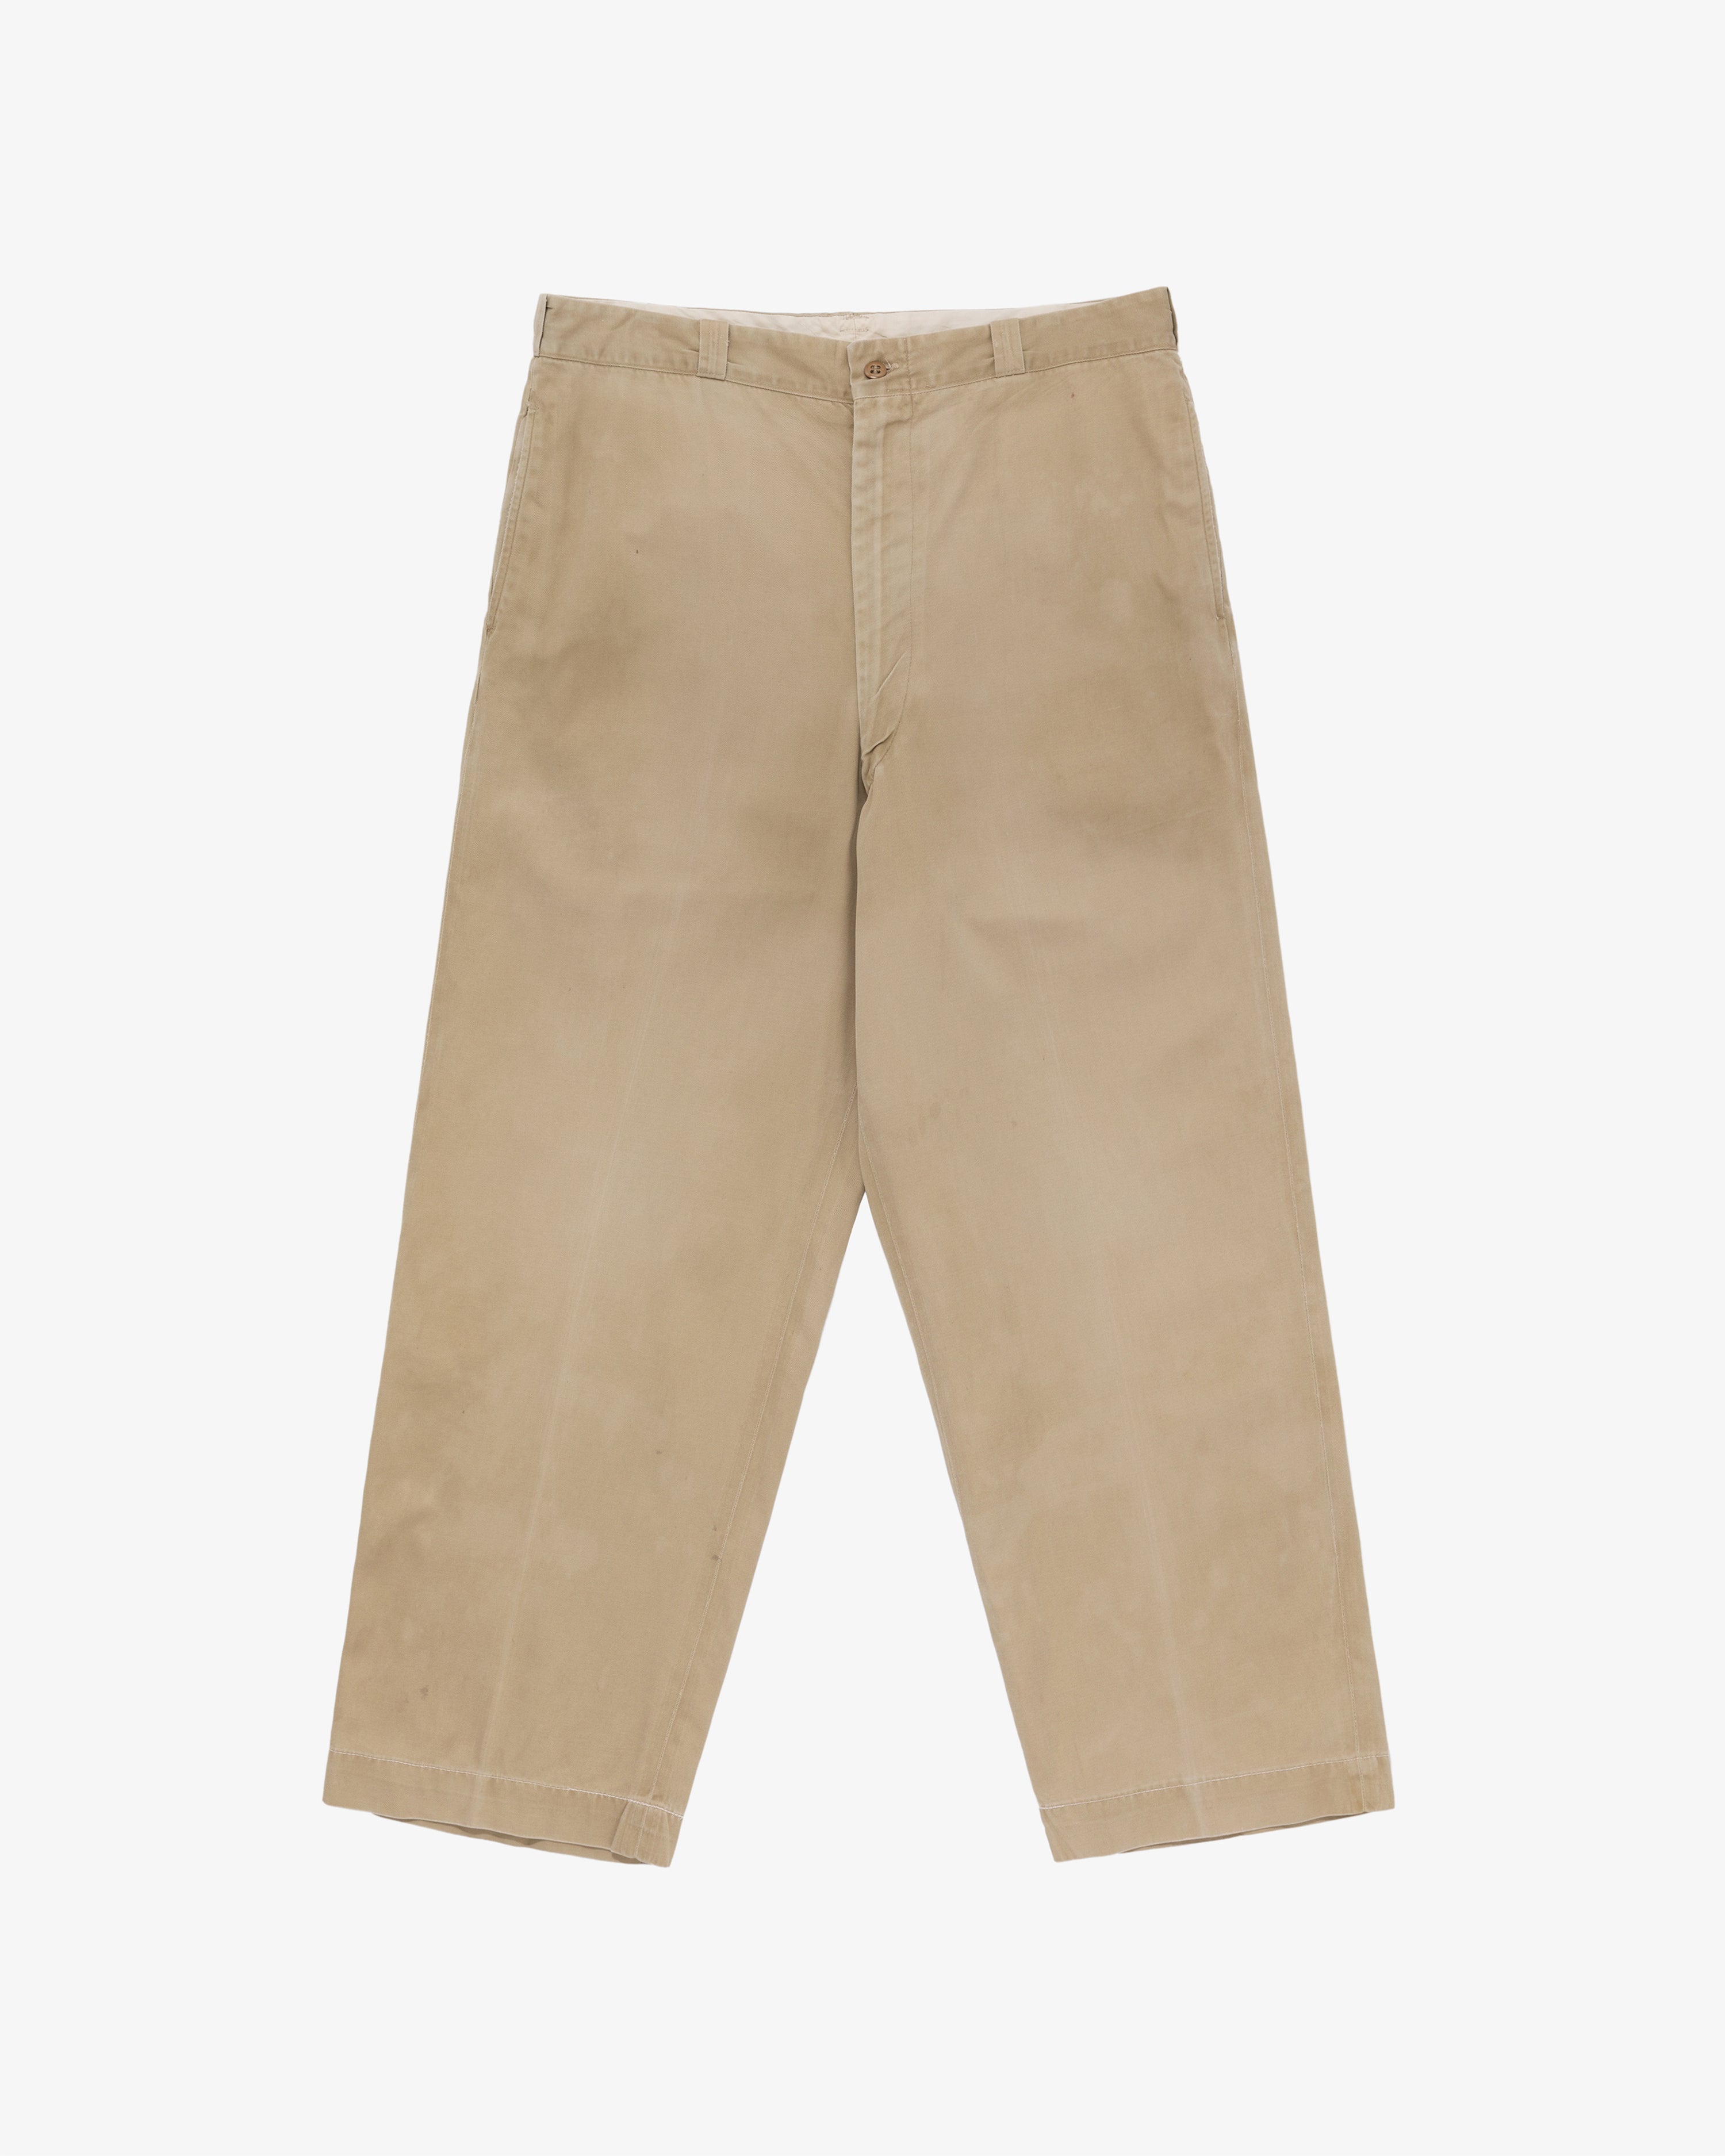 Vintage Type 1 U.S. Army Pants